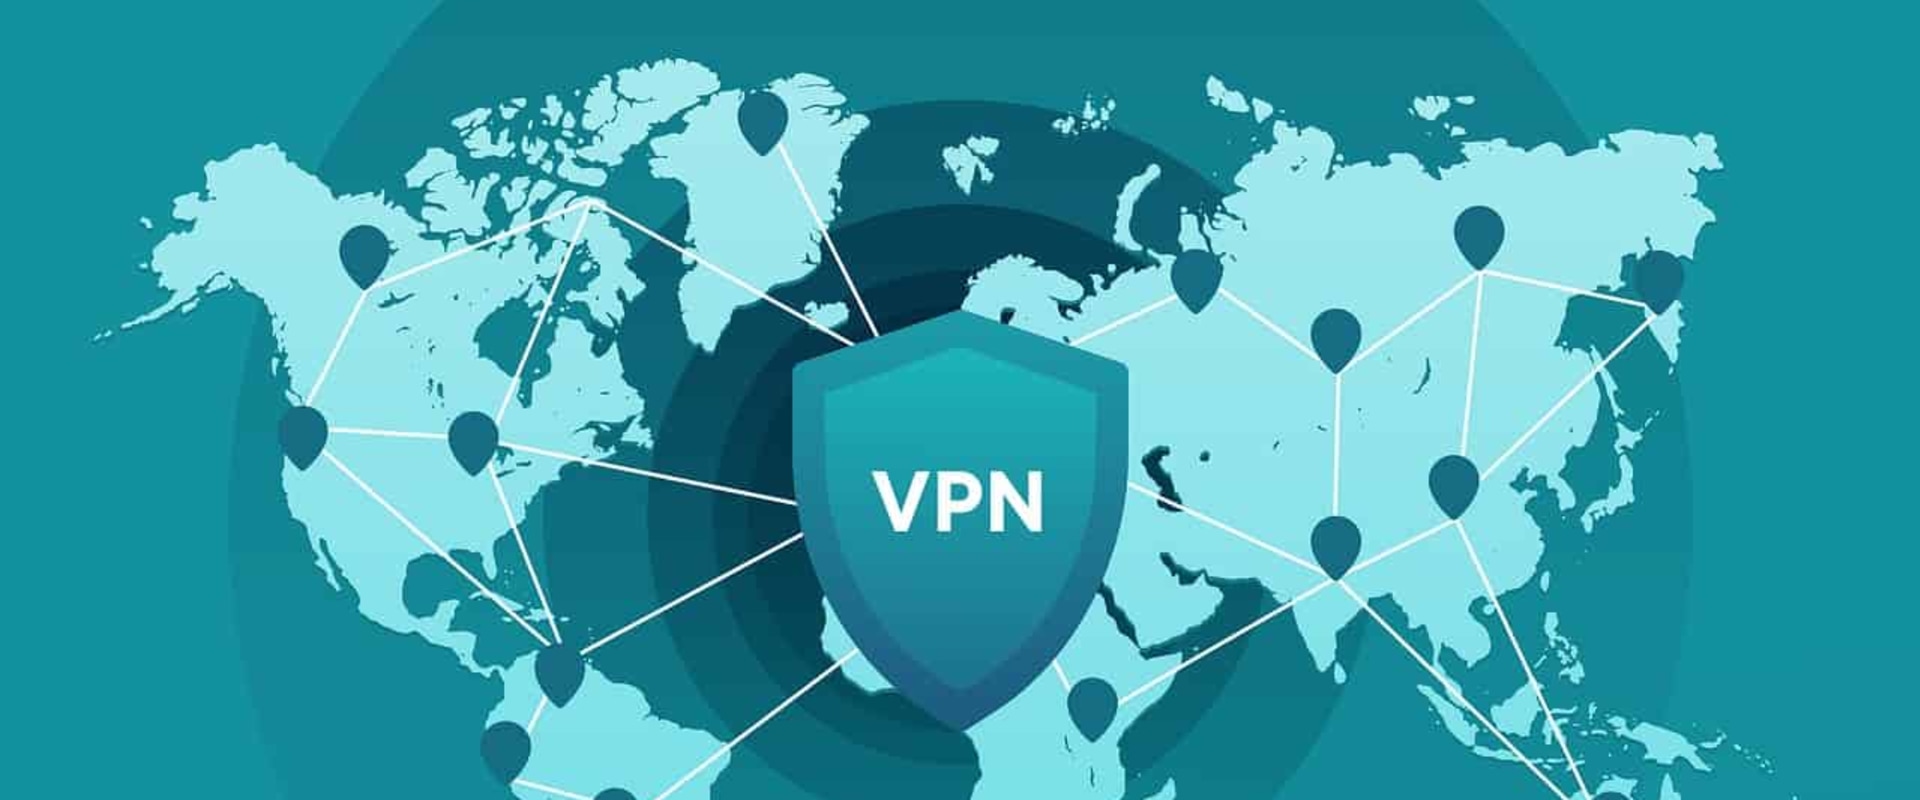 Co je VPN a jak to funguje?